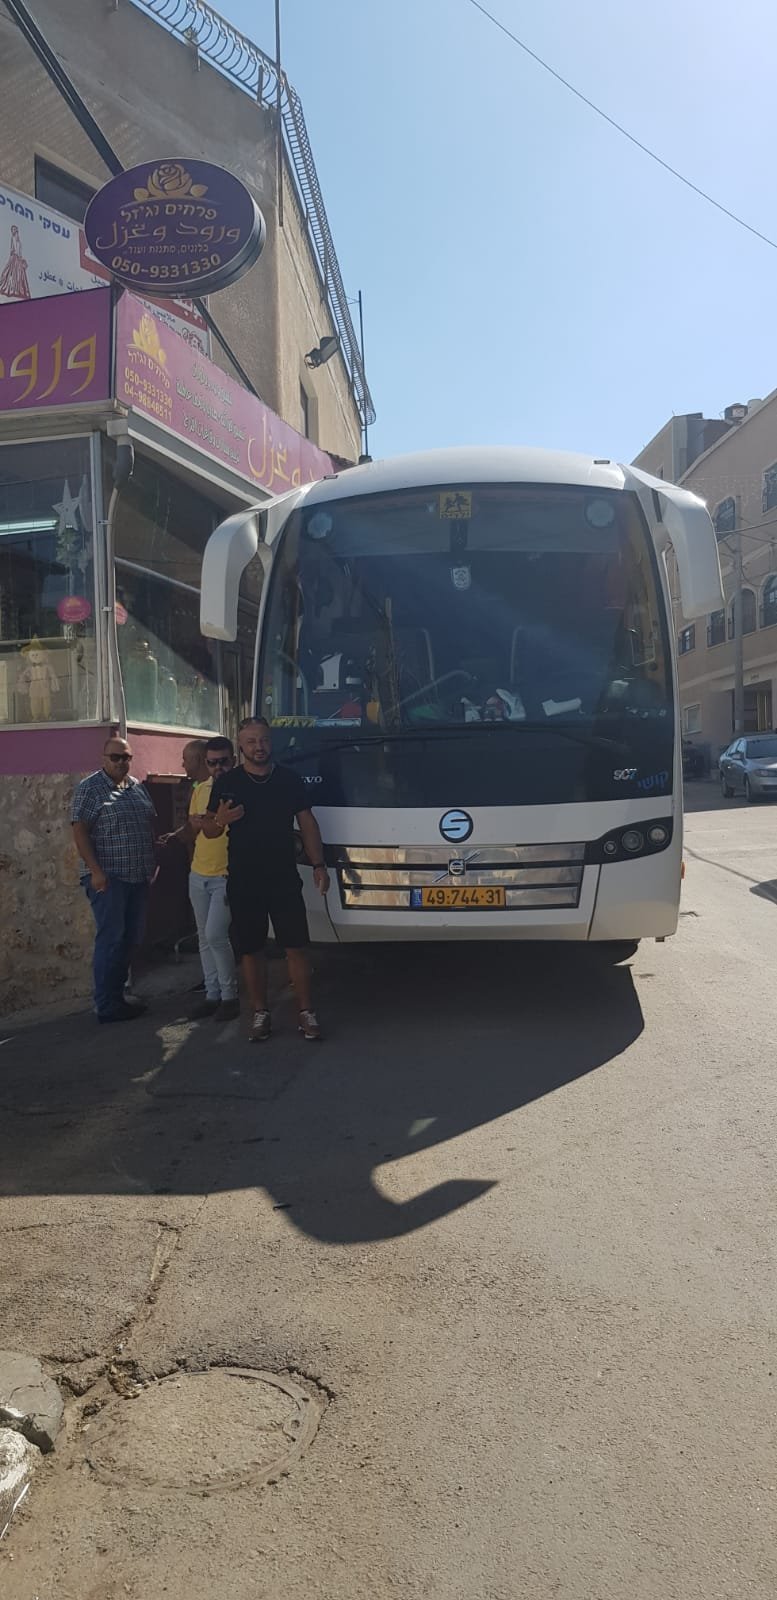 انطلاق الحافلات الى تل أبيب للمشاركة في امّ المظاهرات -8